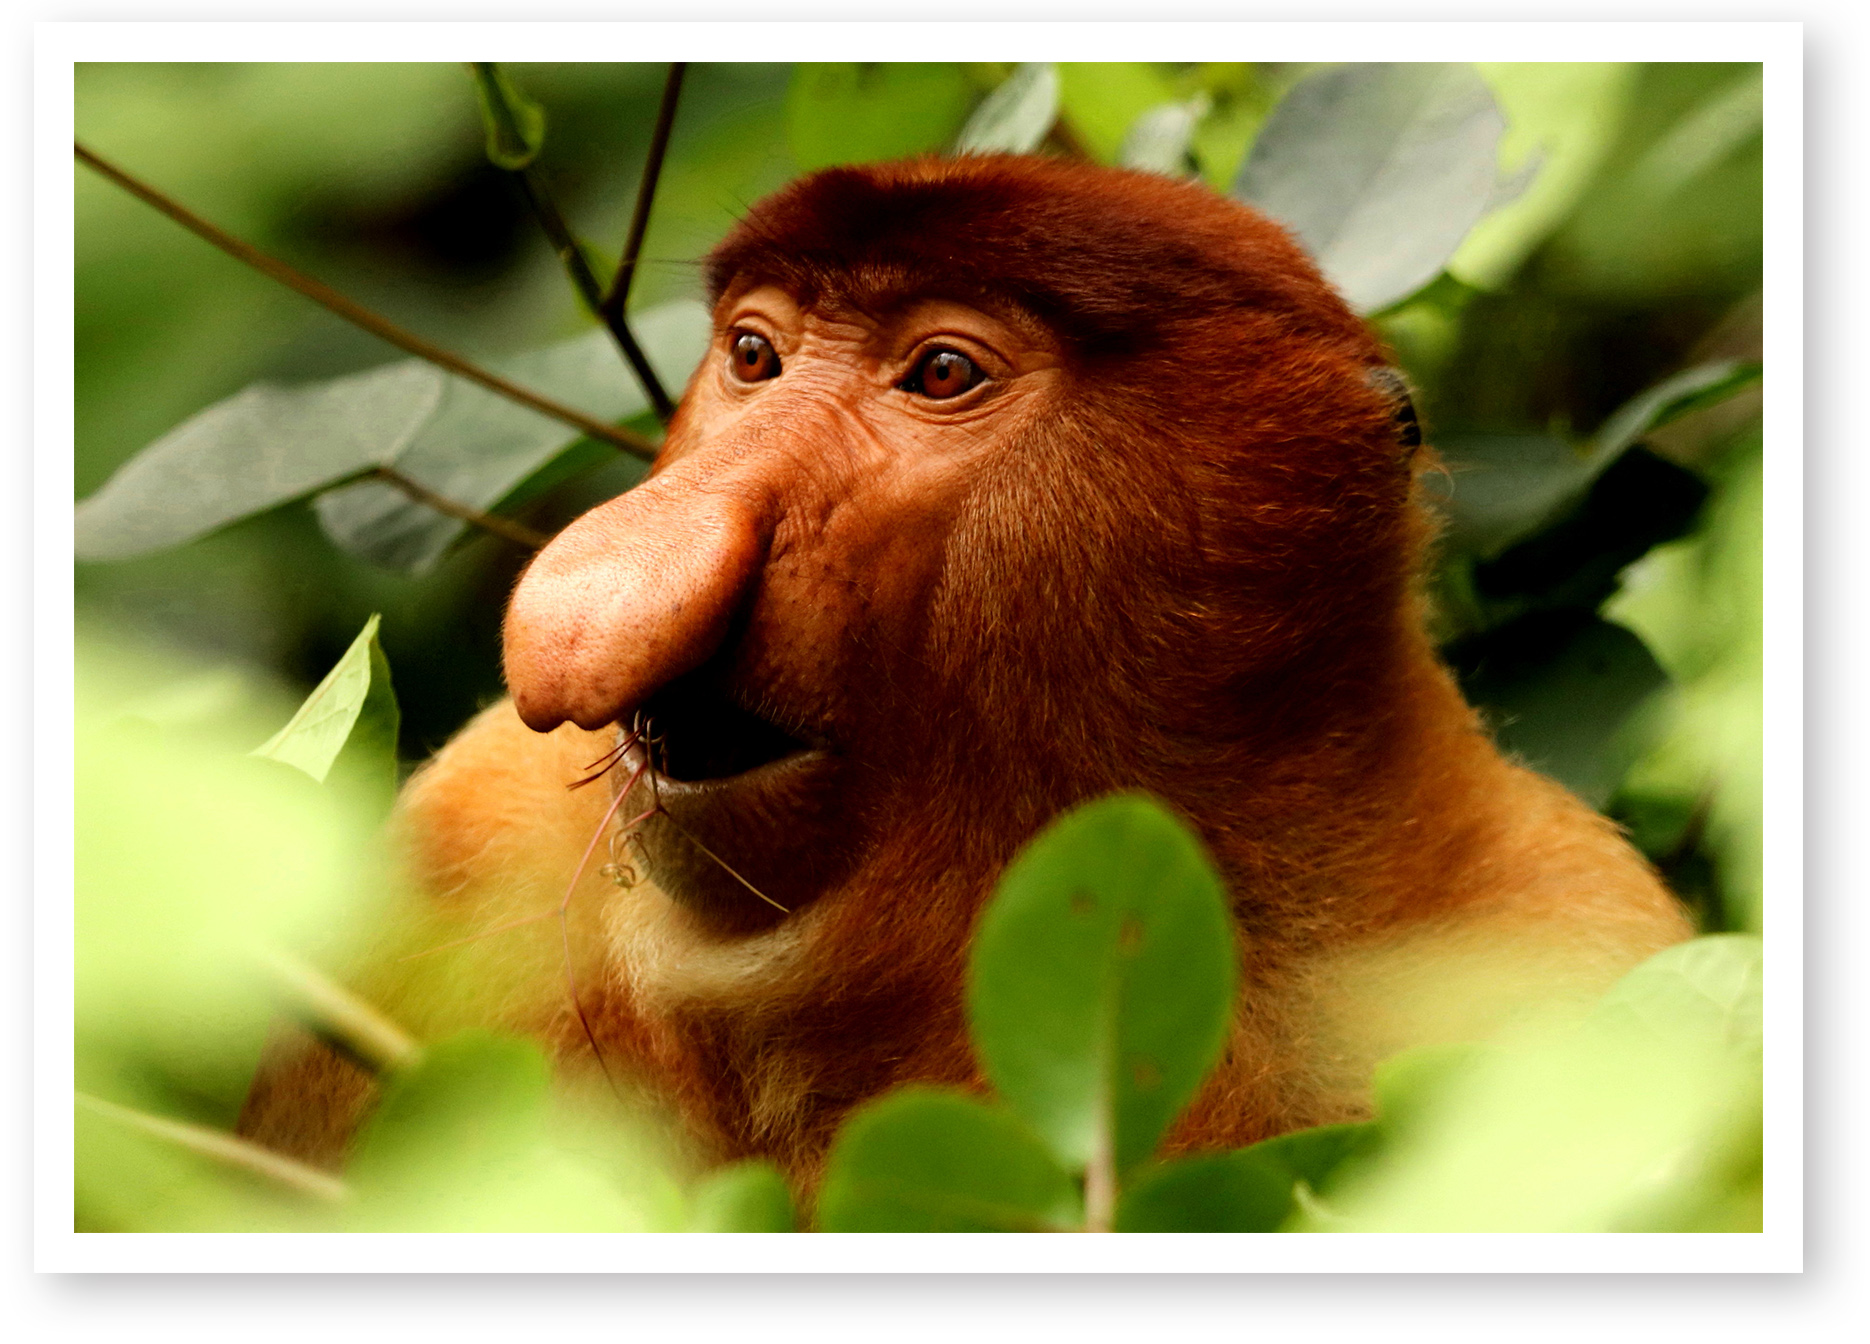 Proboscis Monkey in Borneo